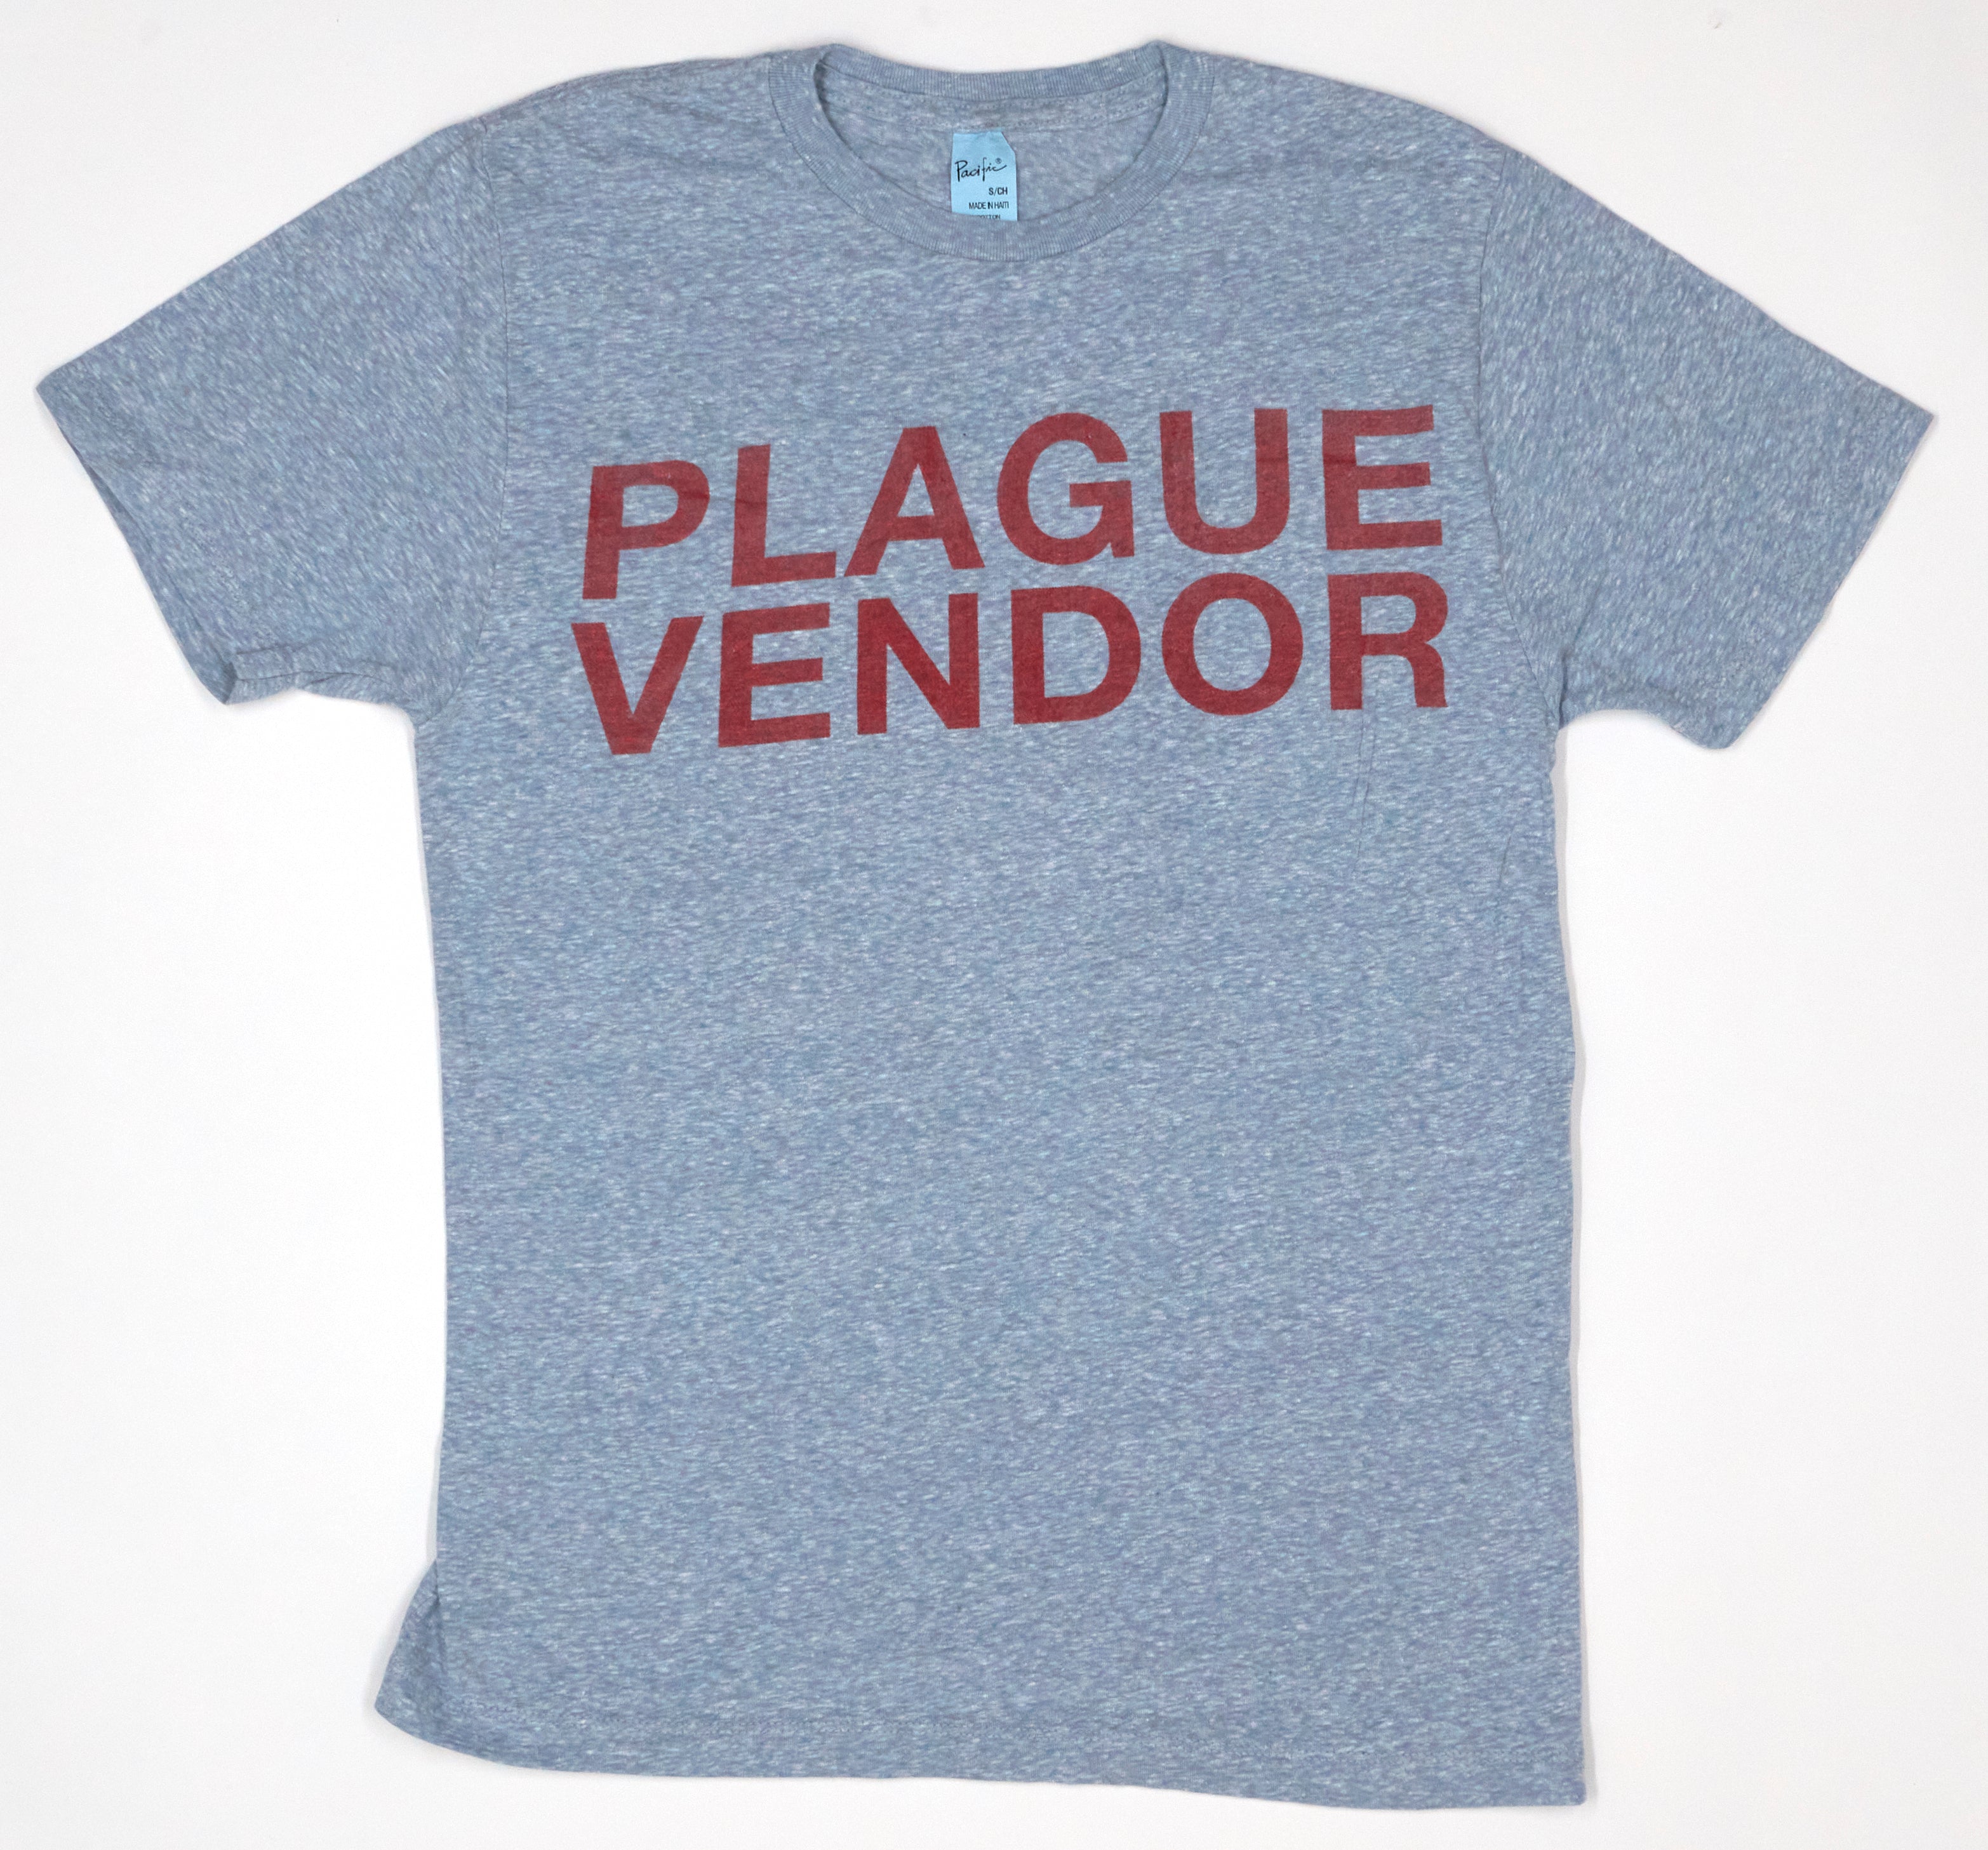 Plague Vendor - Red On Blue Logo 2015 Tour Shirt Size Small